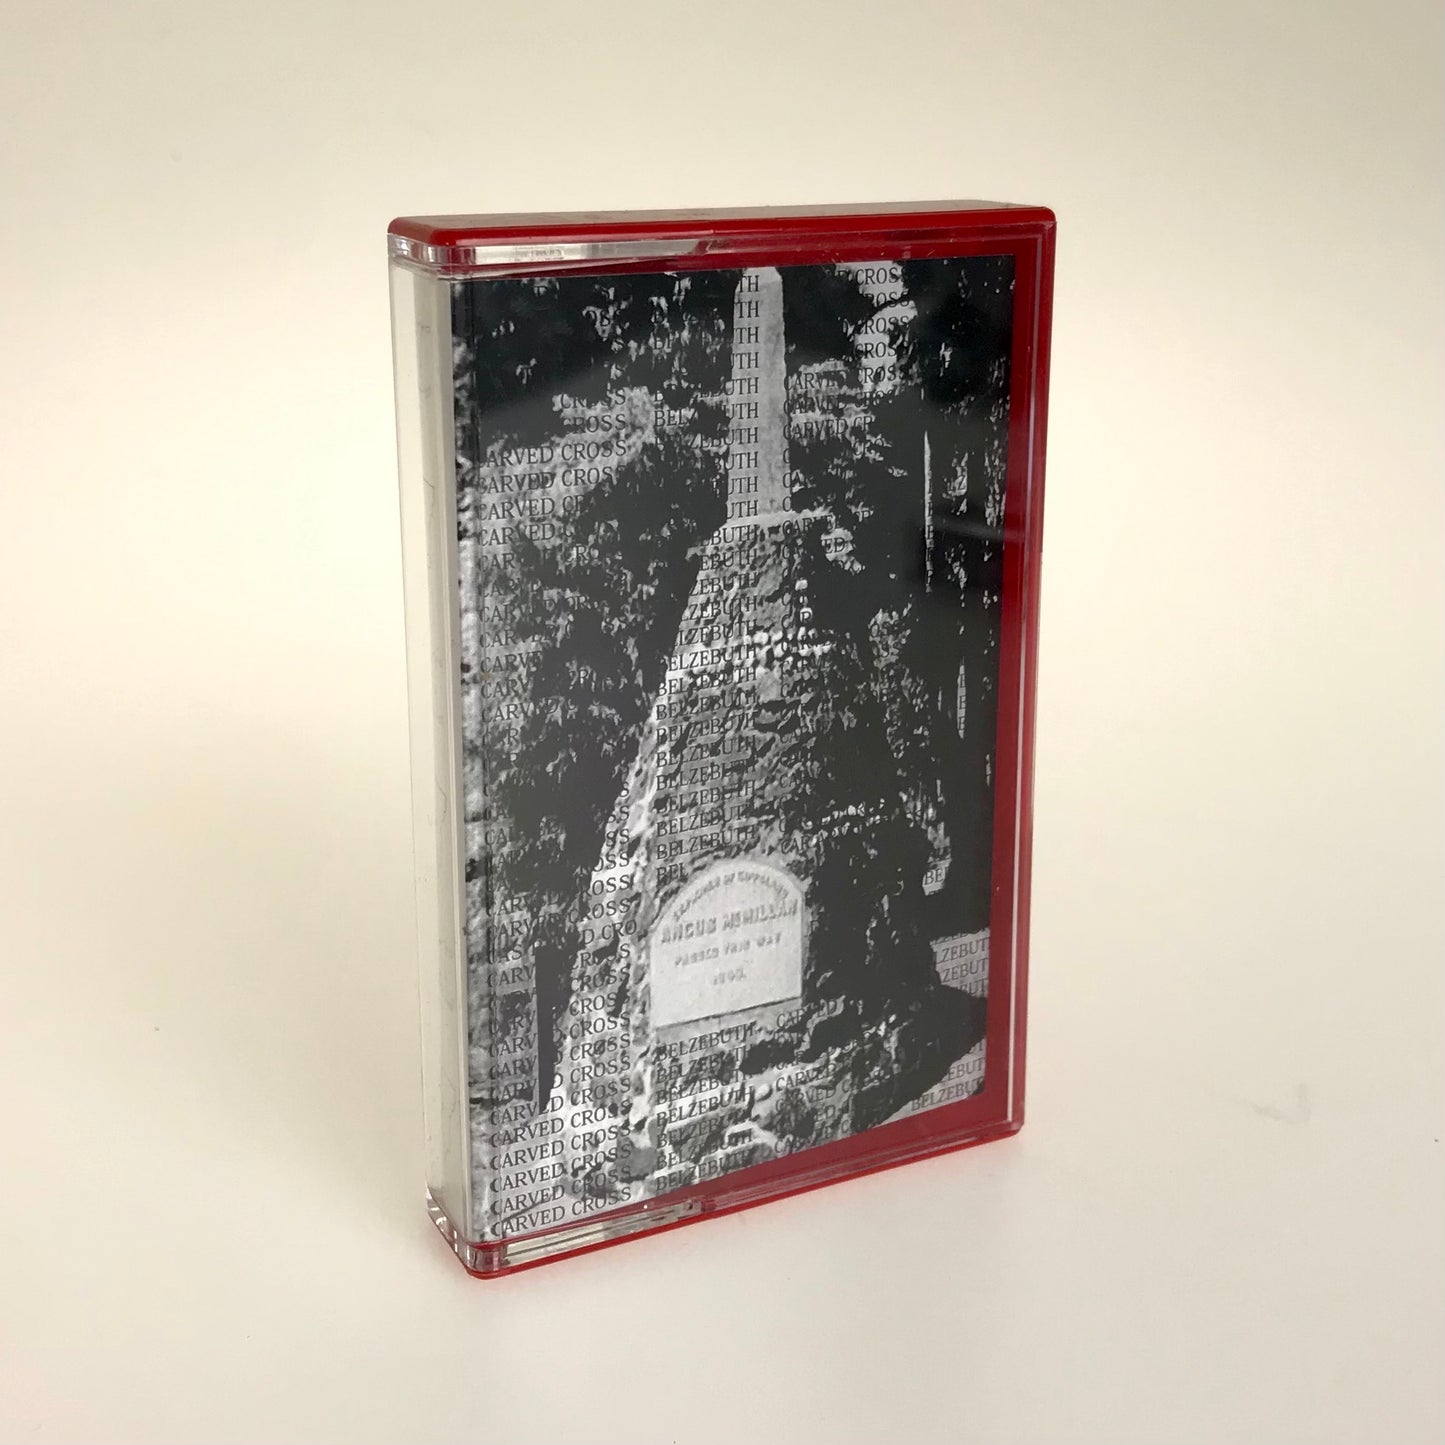 CARVED CROSS / BELZEBUTH split cassette